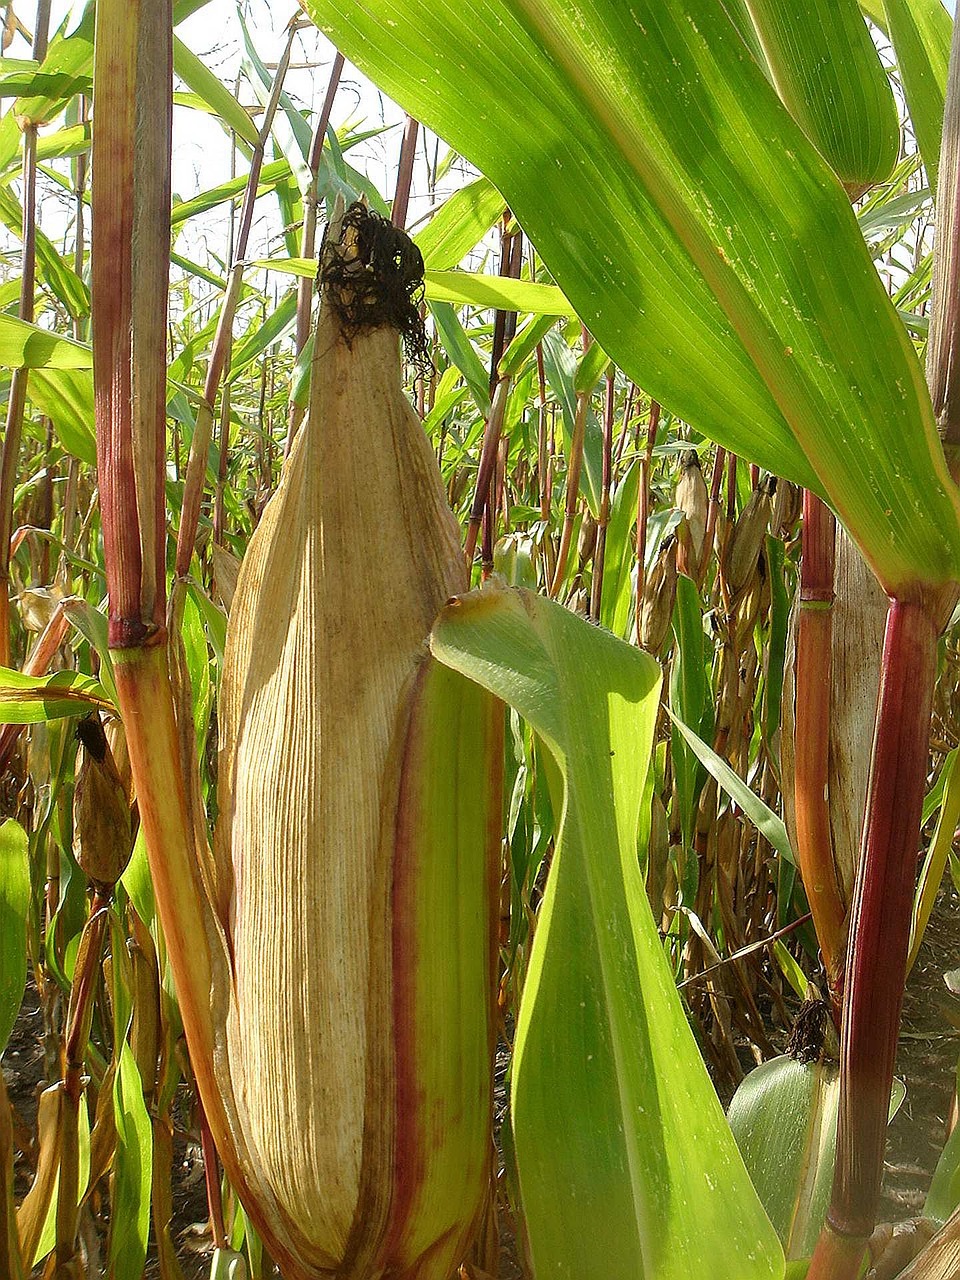 corn ear field free photo